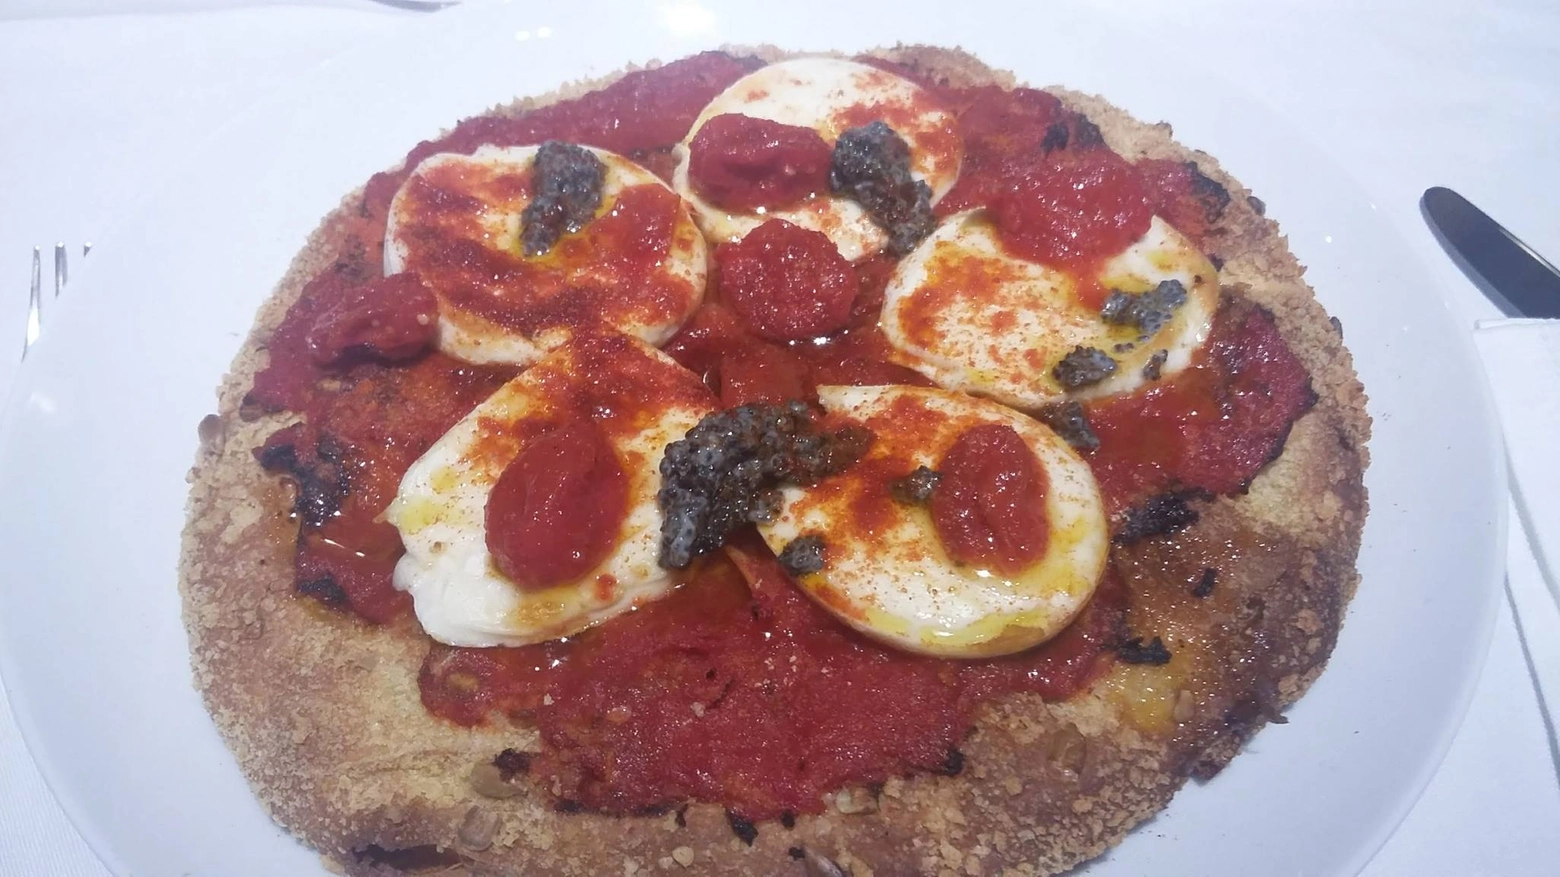 Pizza margherita da 'Cracco' in Galleria (Foto Twitter)